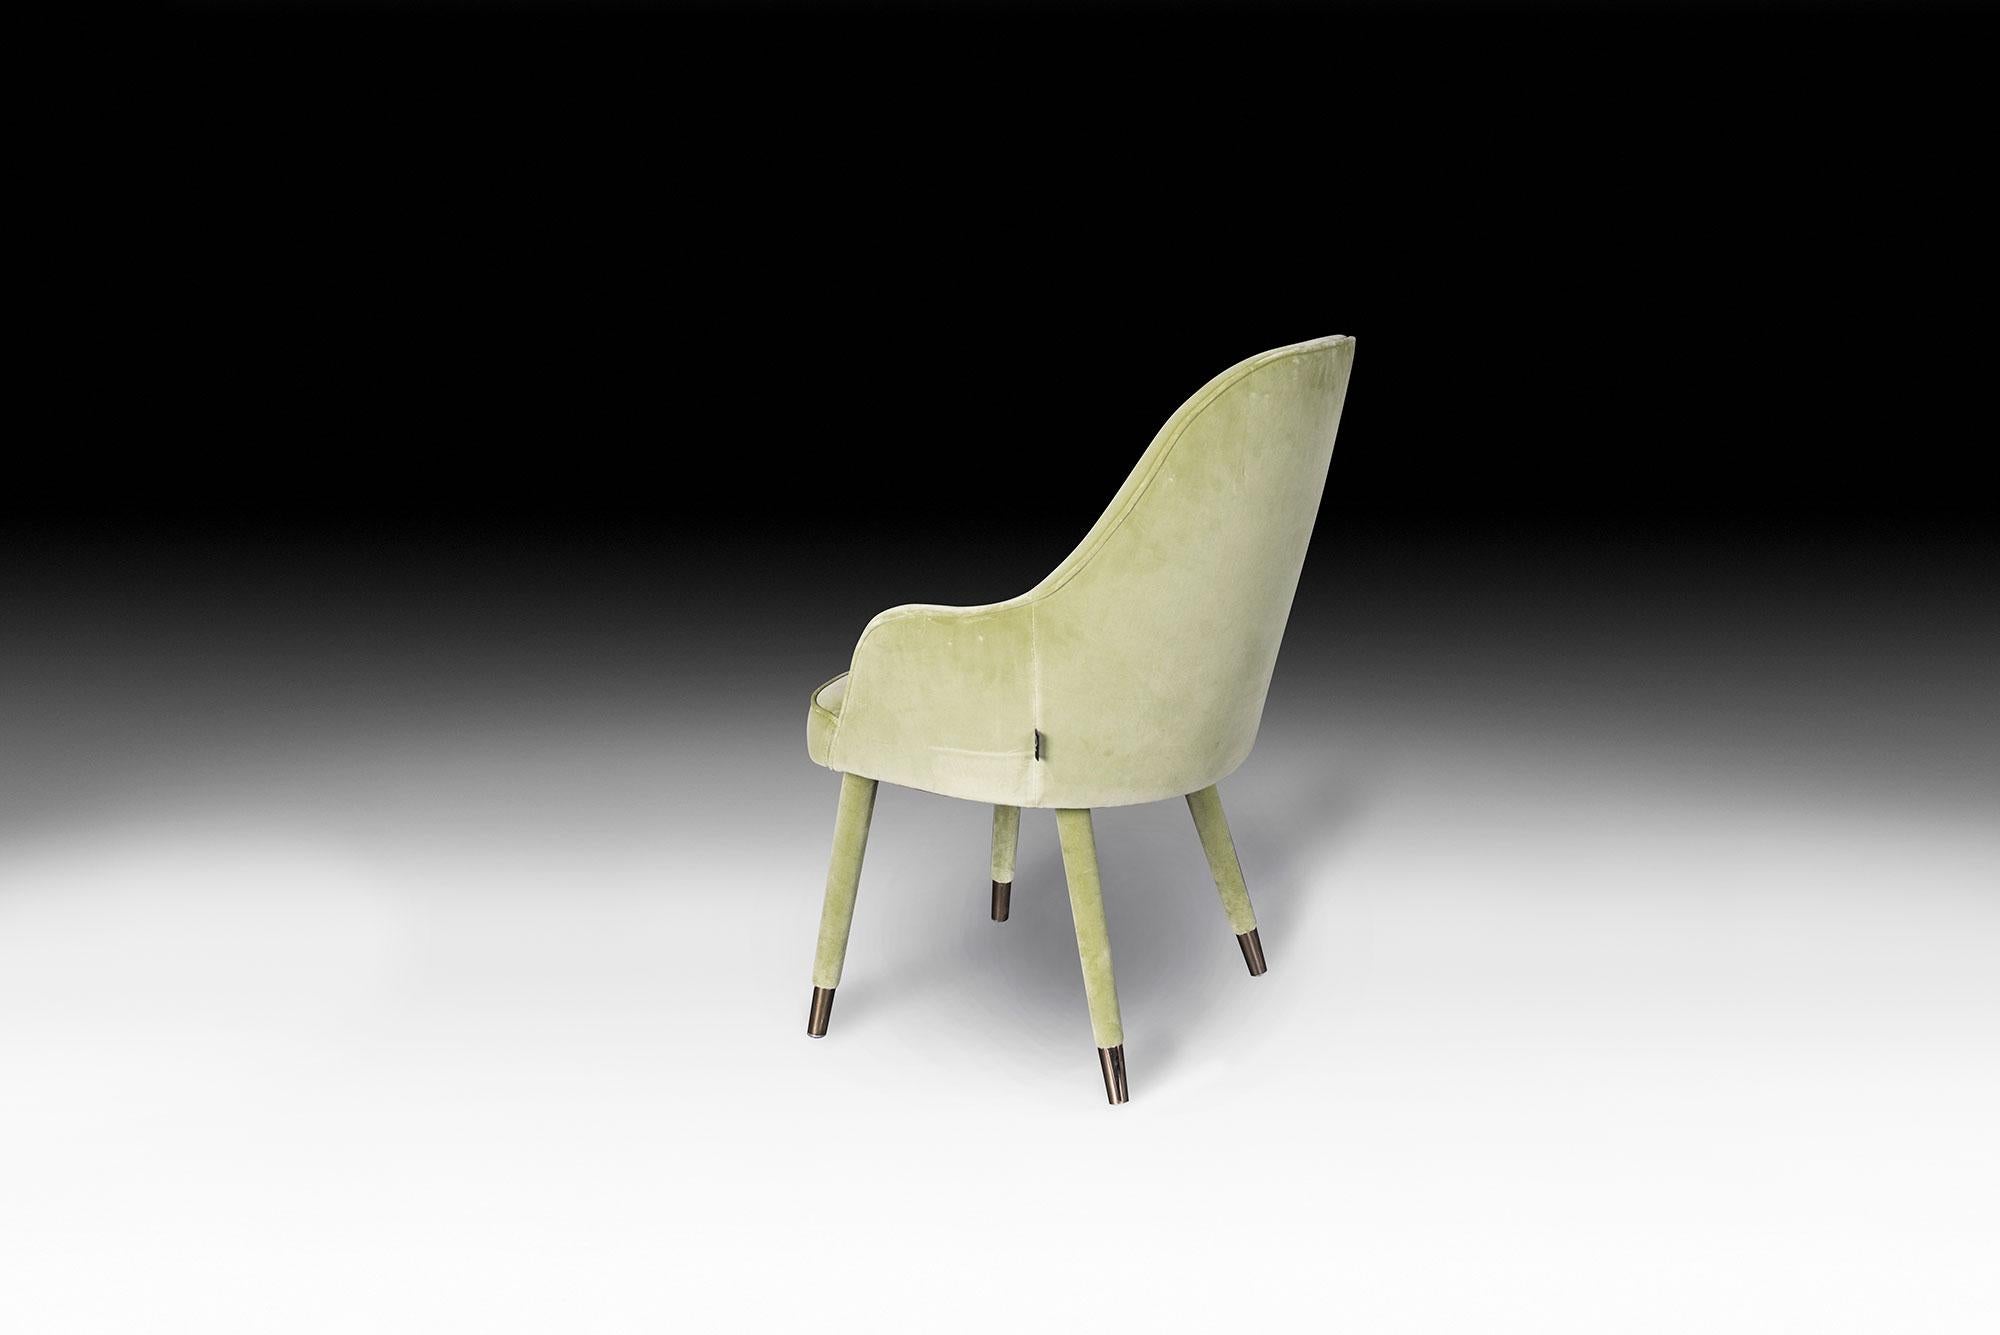 Les meubles VG représentent le luxe en termes d'exclusivité, de distinction et de haute qualité. Ils sont le résultat d'un Design sophistiqué et exclusif à forte identité et sont le fruit d'une attention méticuleuse portée aux détails typiques des